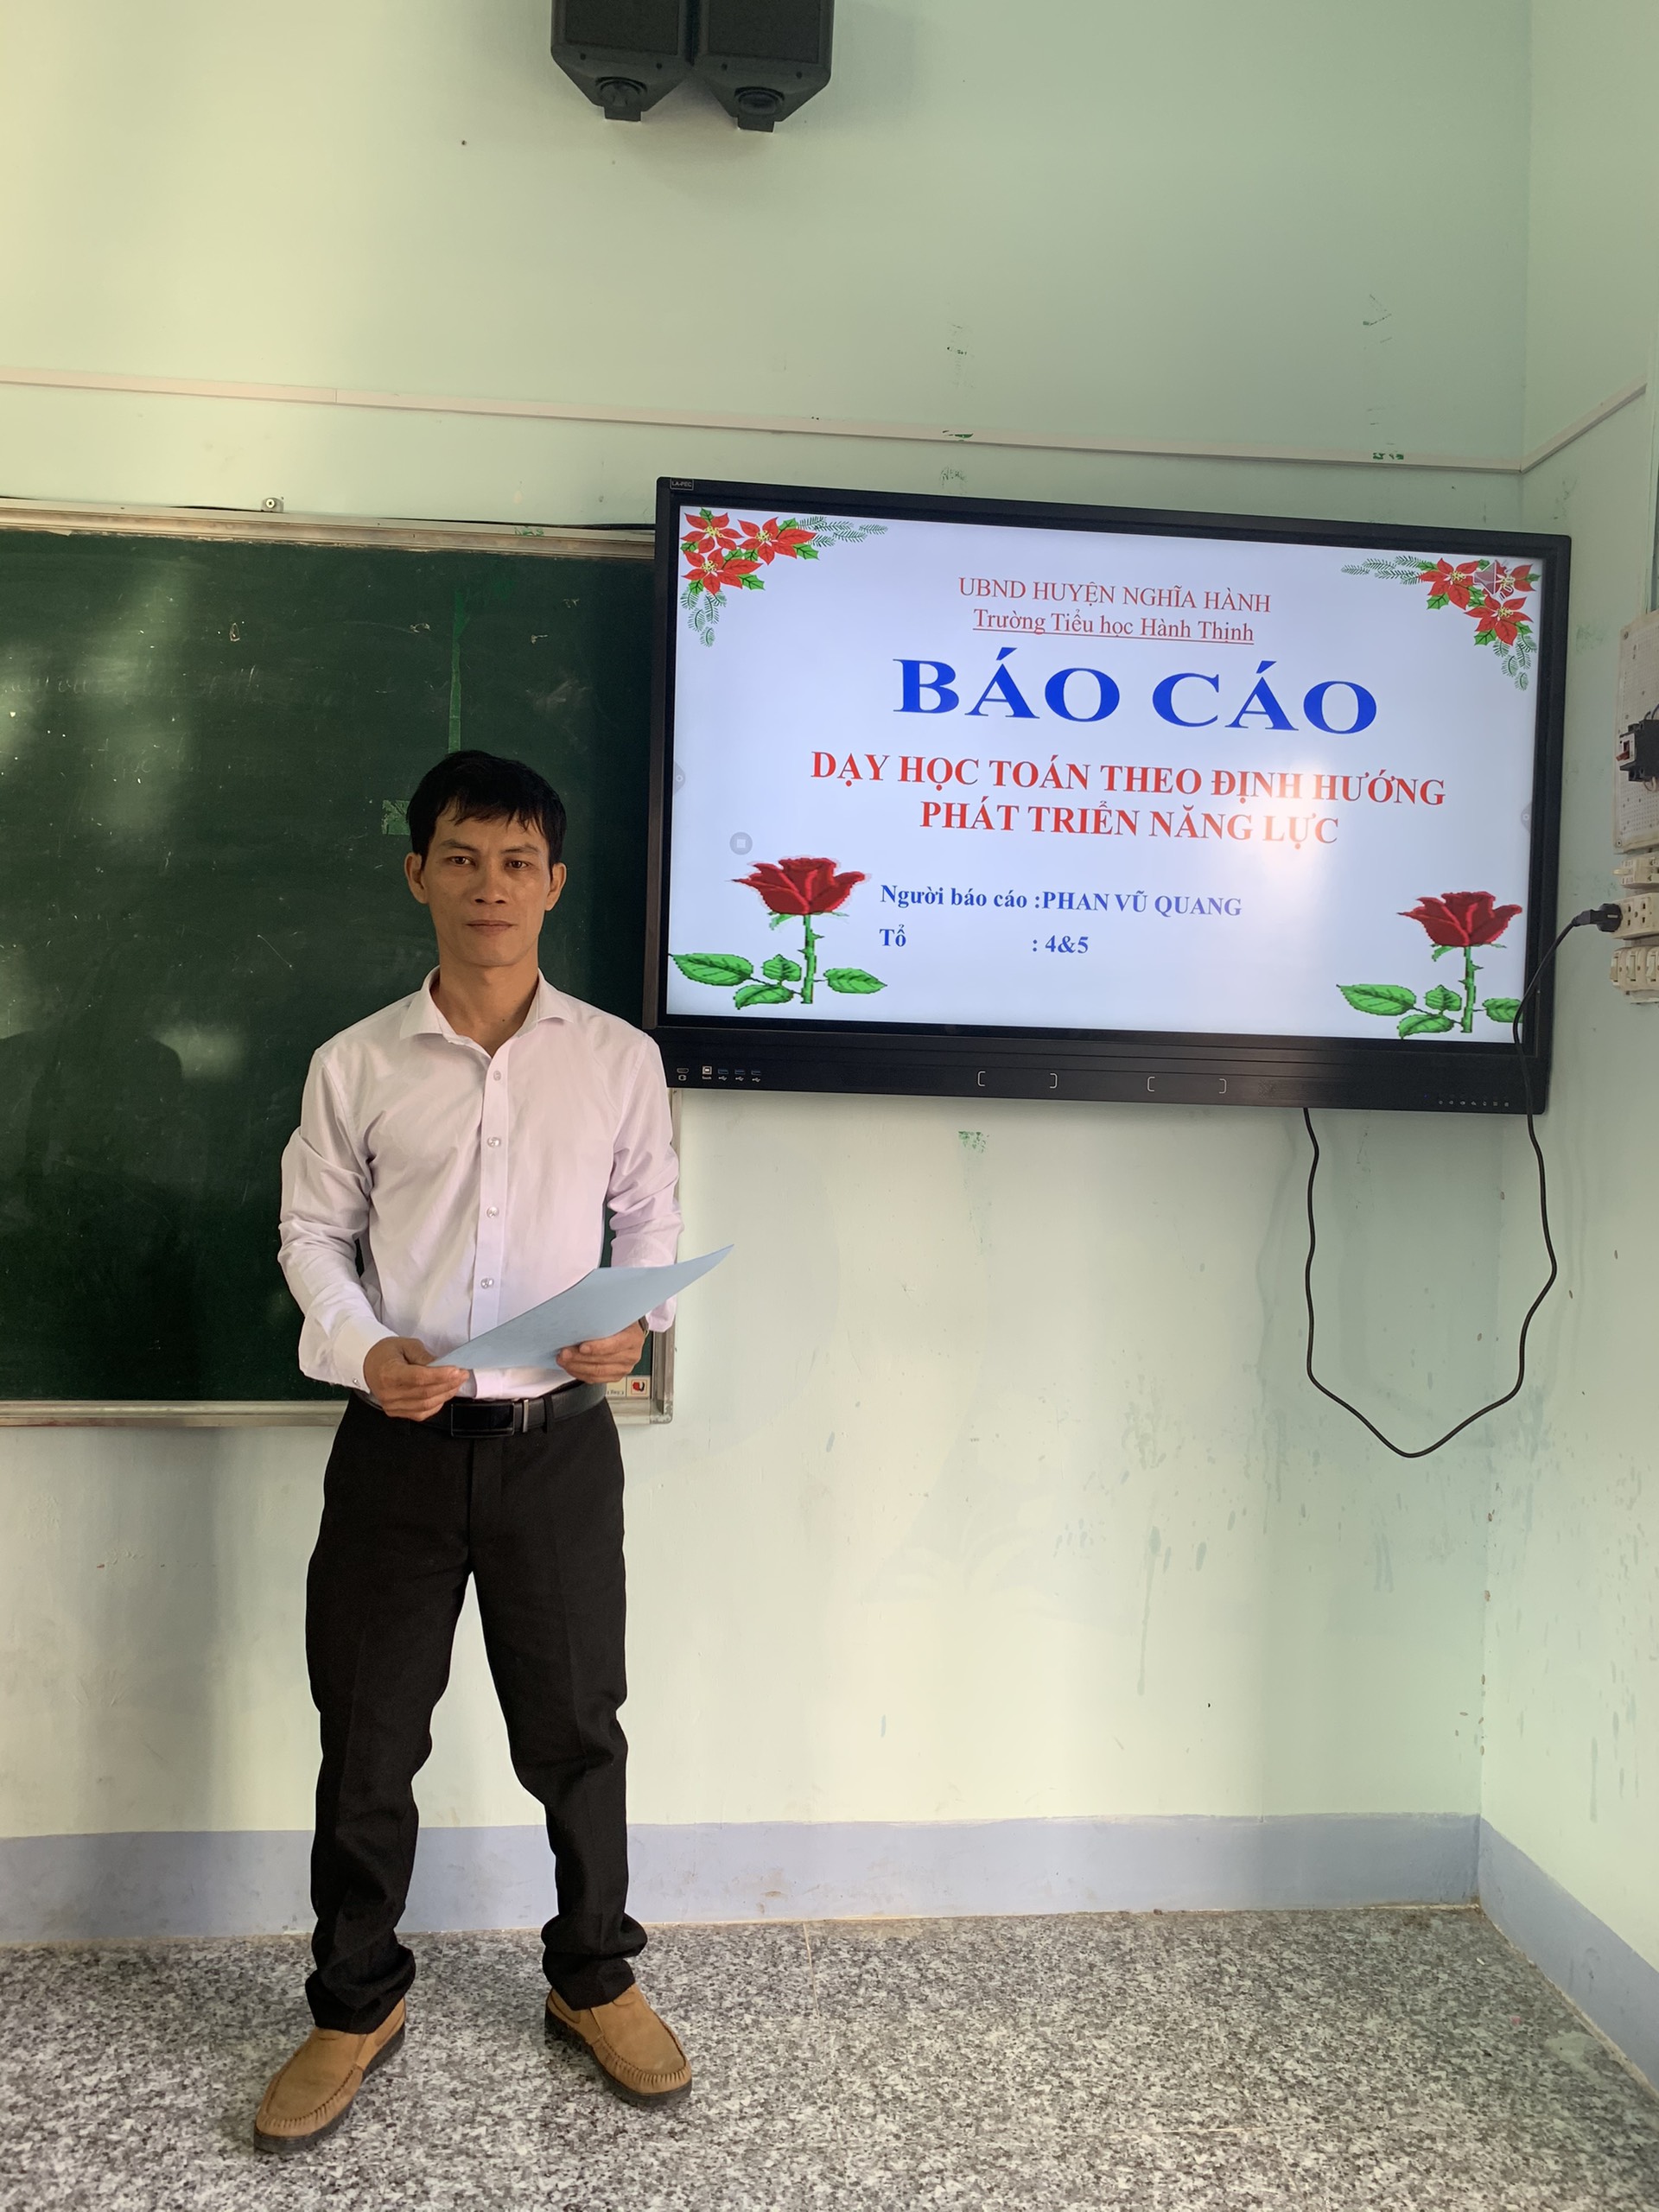 Đồng chí Phan Vũ Quang báo cáo chuyên đề Dạy học Toán theo định hướng phát triển năng lực